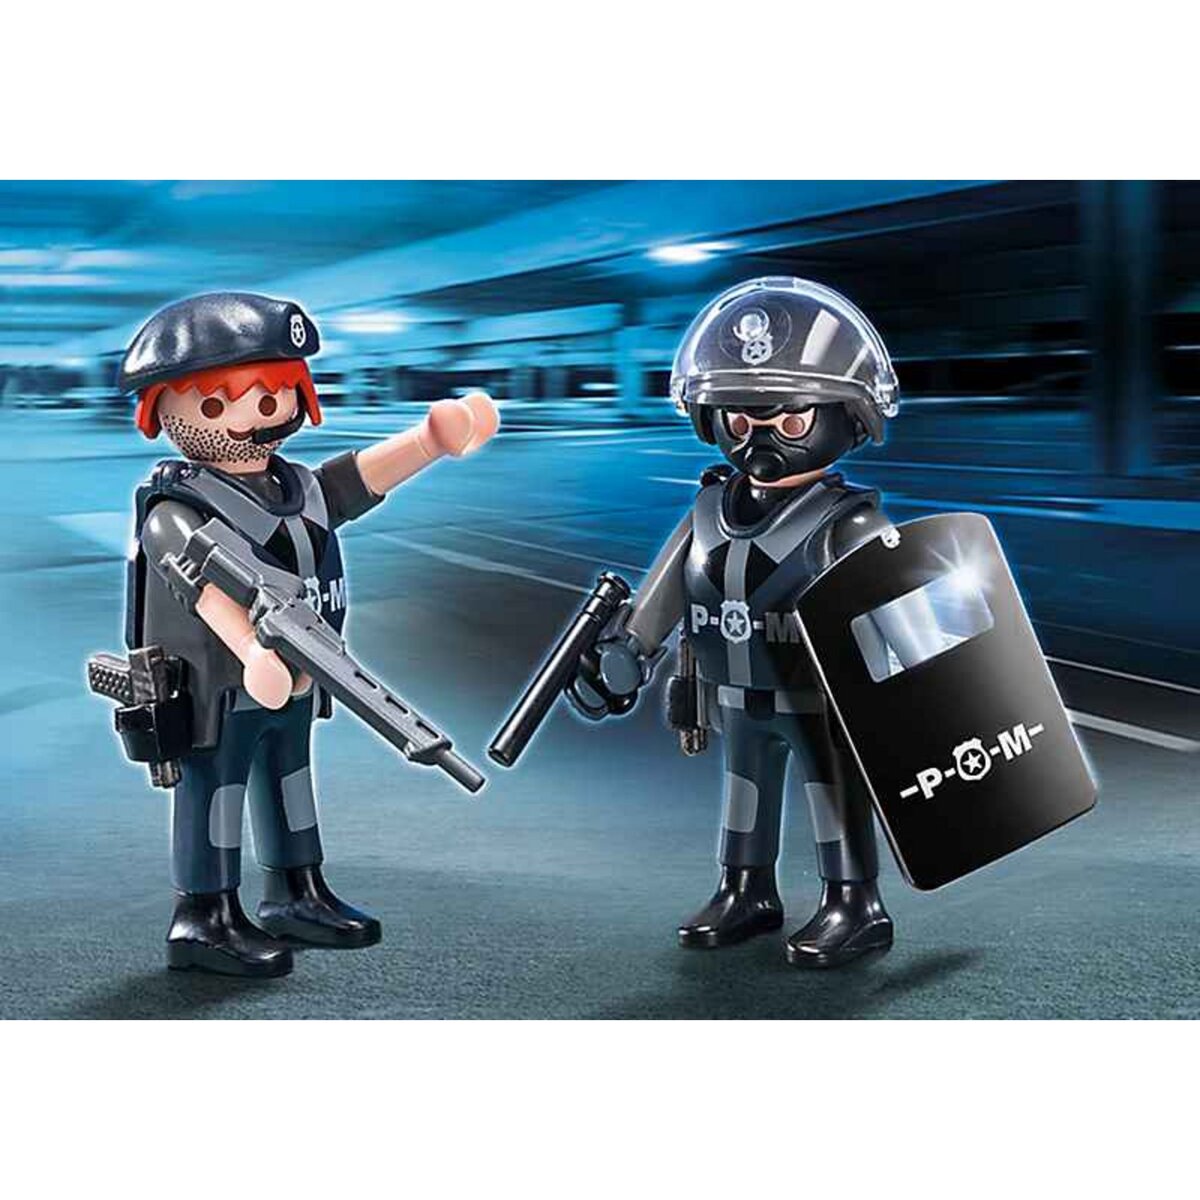 PLAYMOBIL 5515 Duo Policiers des forces spéciales